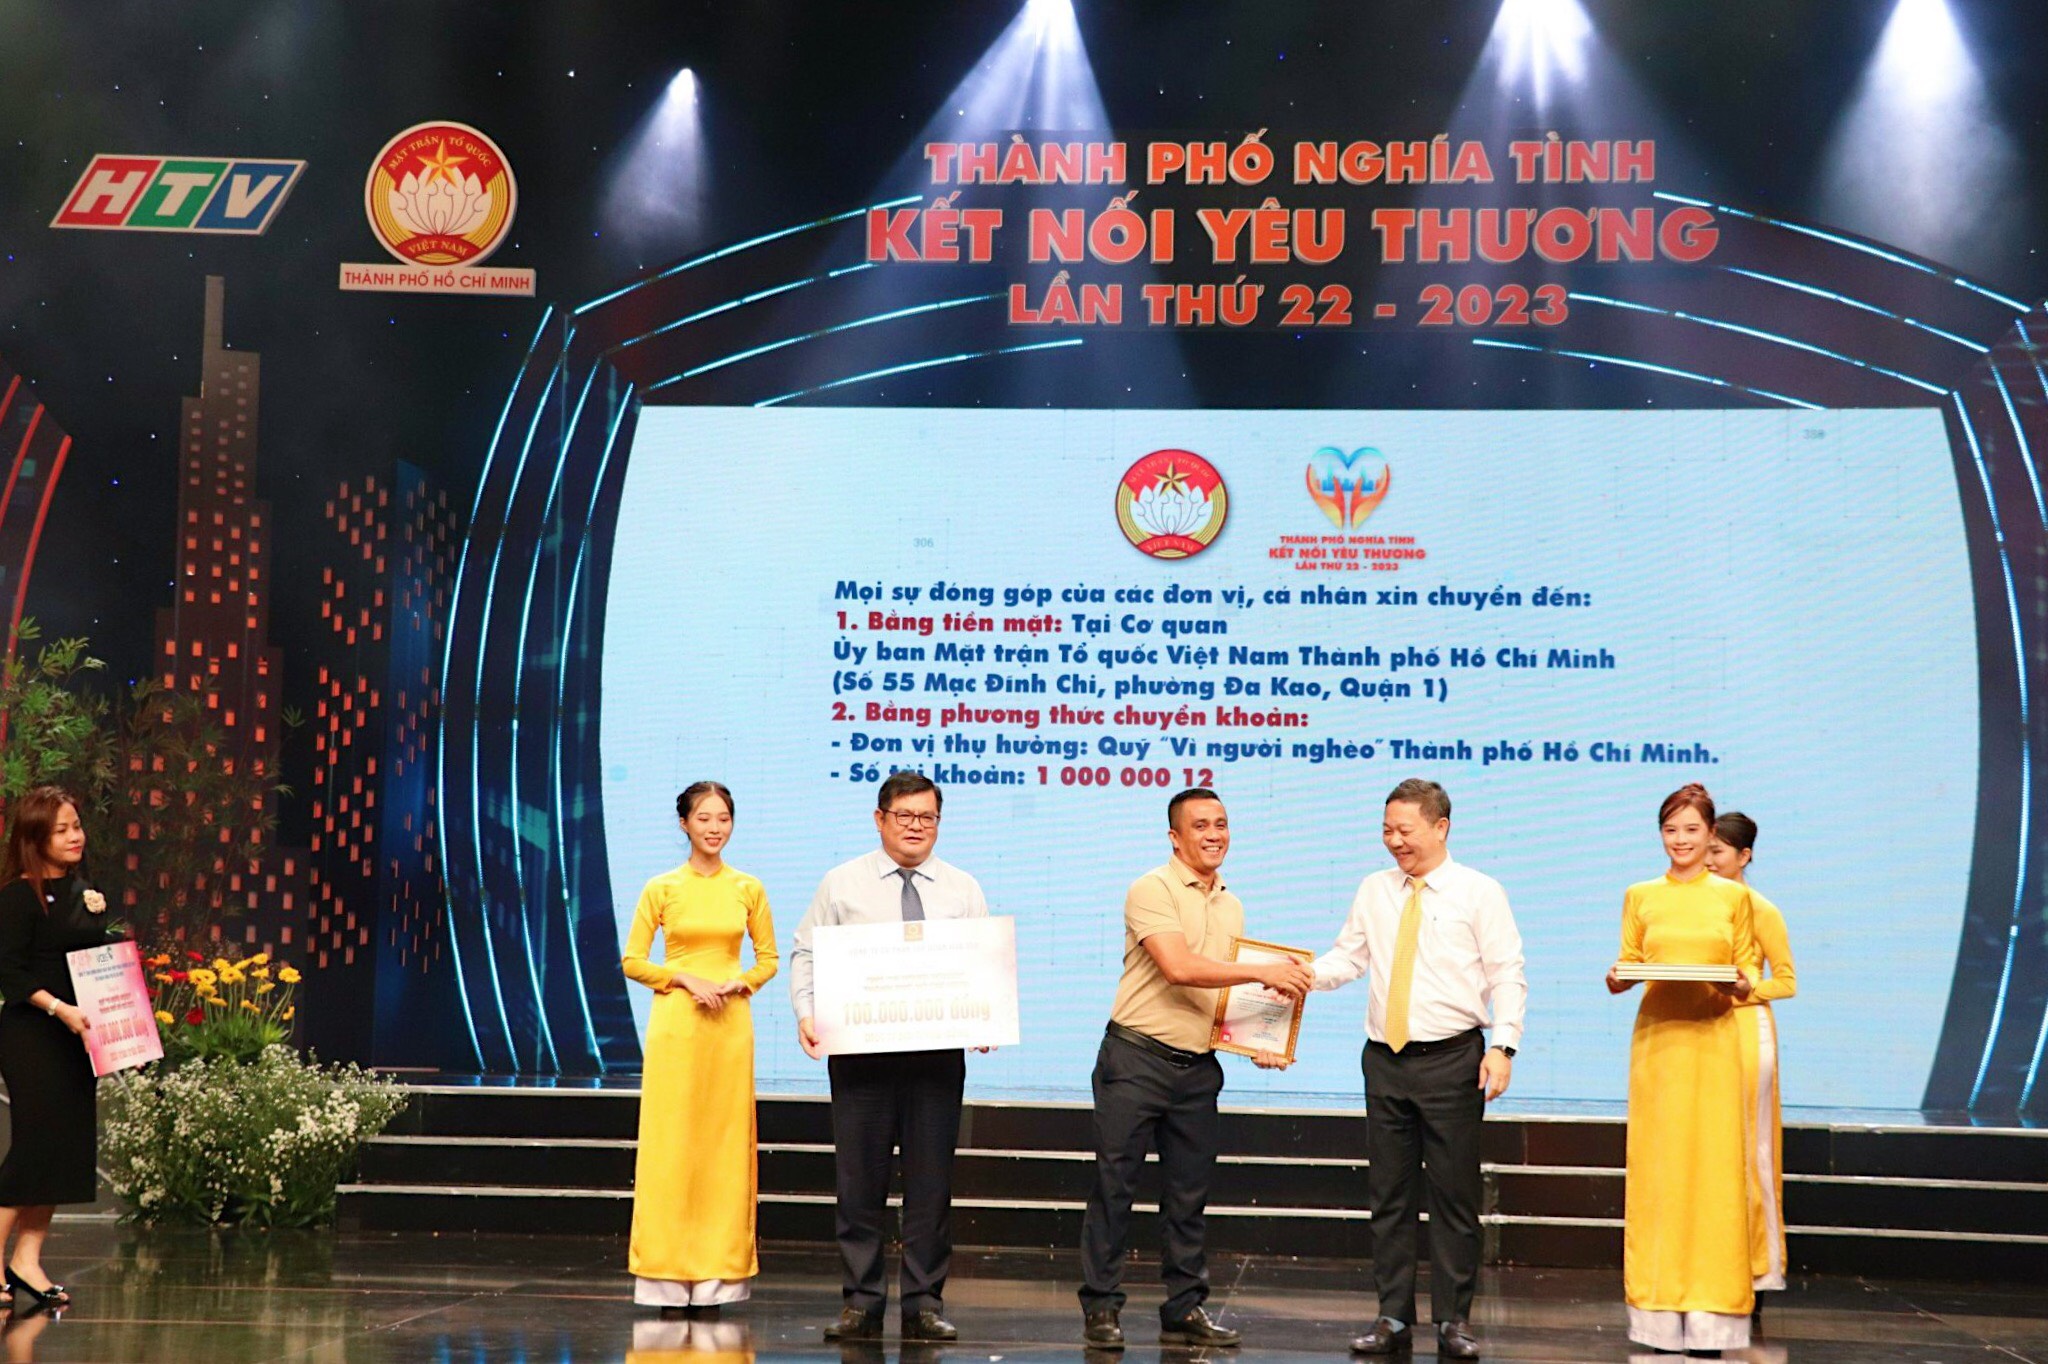 Tập đoàn Hoa Sen ủng hộ 100 triệu đồng cho Quỹ “Vì người nghèo” TP. Hồ Chí Minh 2